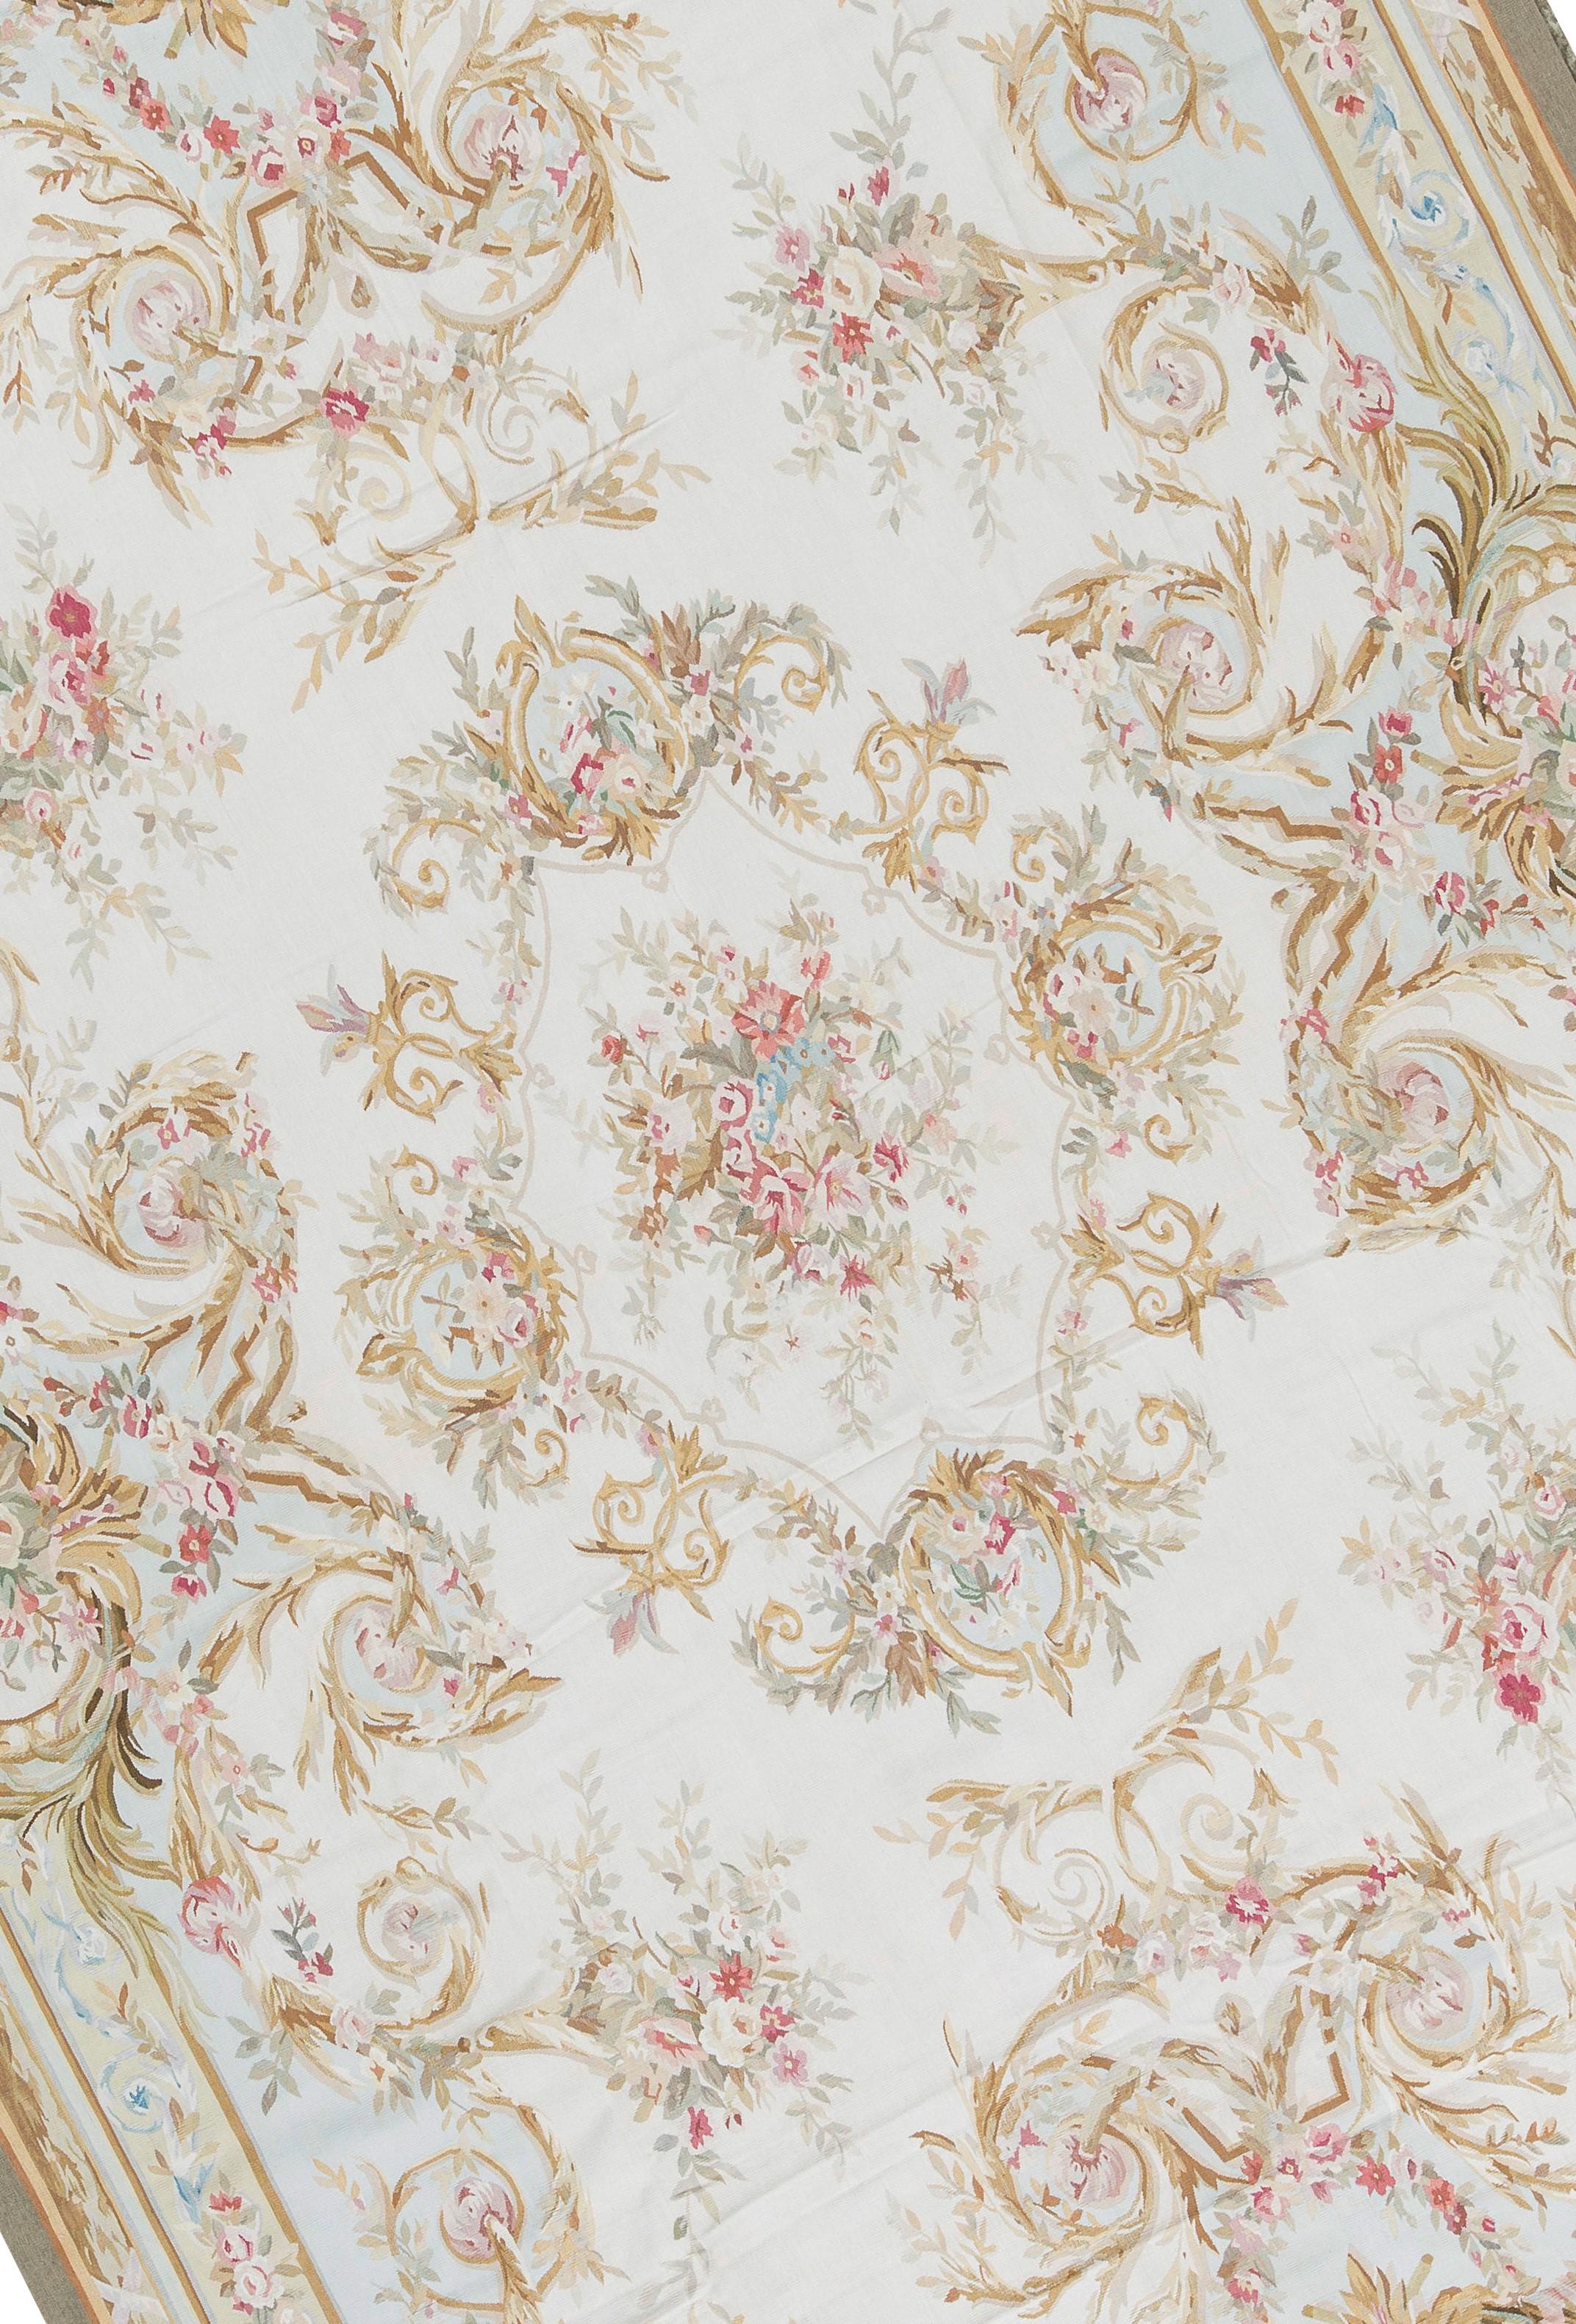 Handgewebte Nachbildung der klassischen französischen Aubusson-Teppiche in Flachgewebe, die seit dem späten 17. Jahrhundert in den schönsten Häusern und Palästen zu finden sind. Größe: 11' 1'' x 16' 3''.